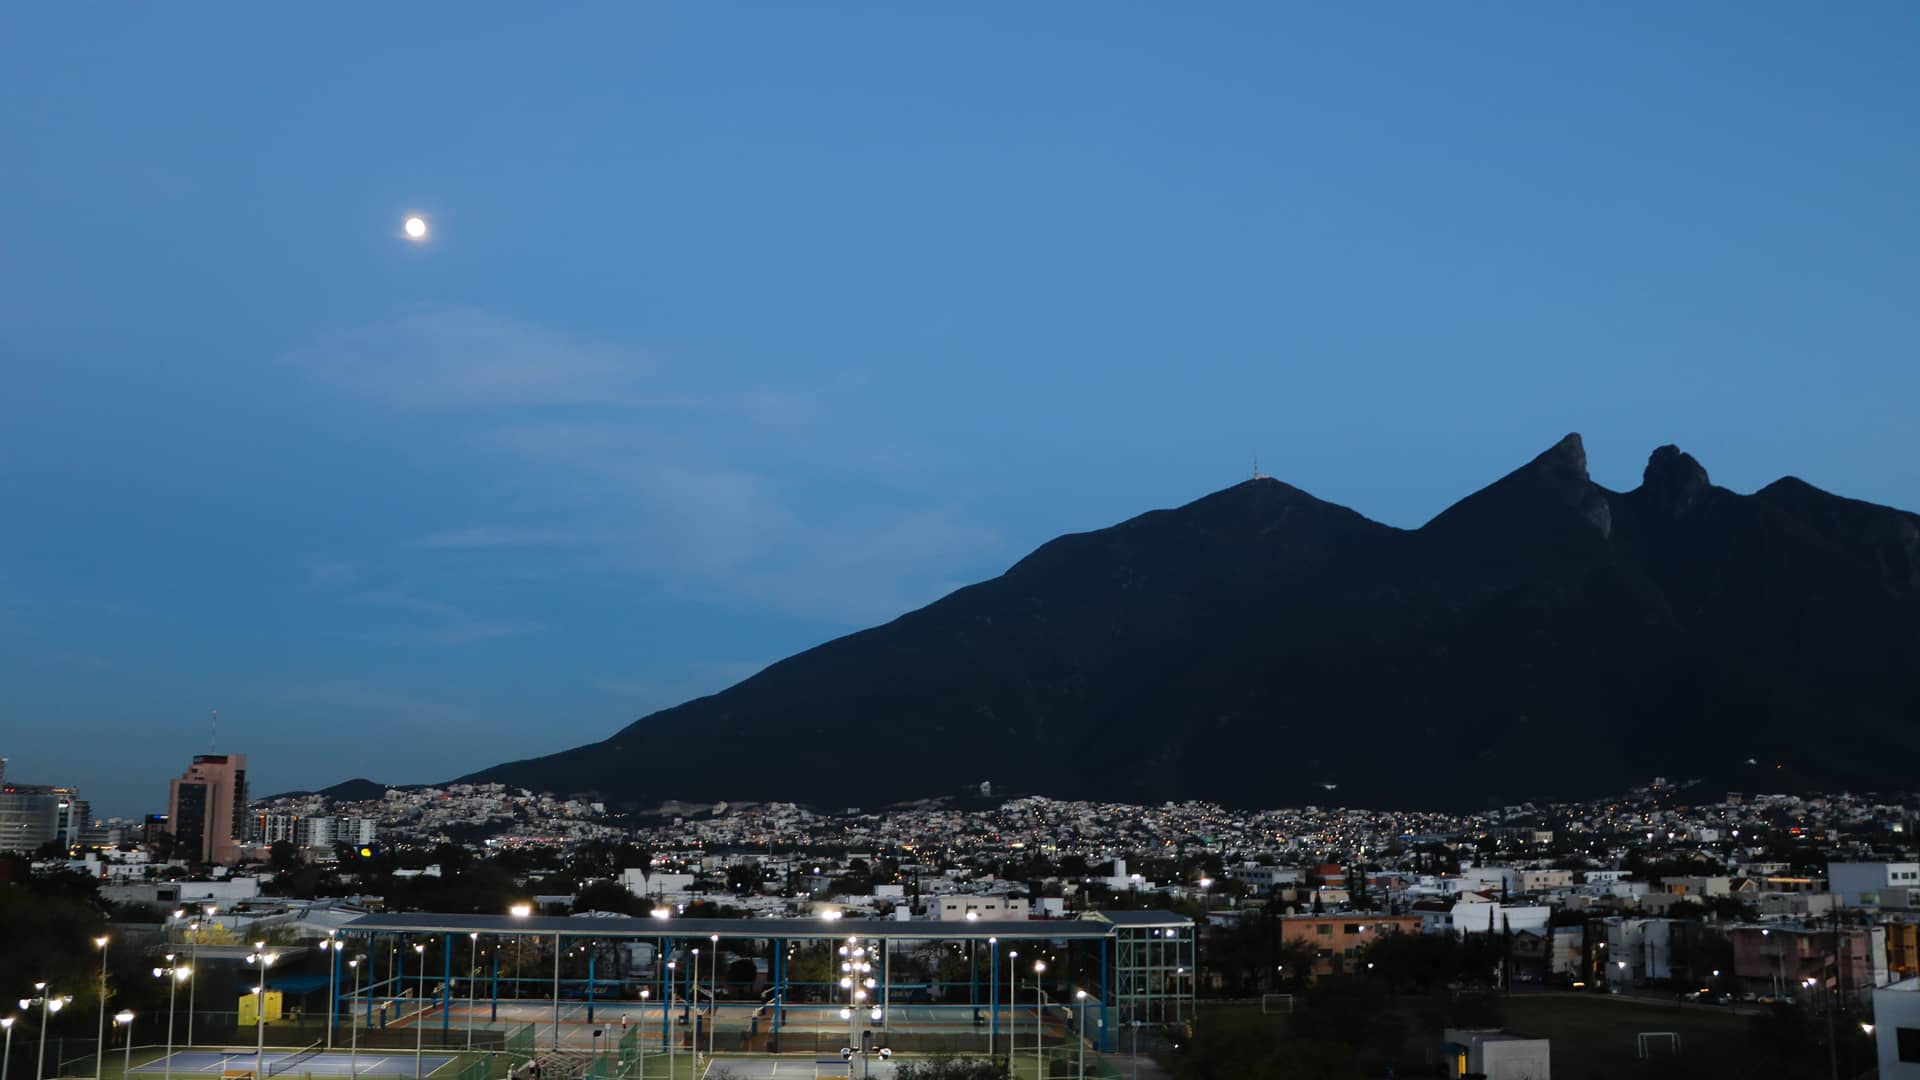 Panoramica noctura de la montana de Monterrey para representar las sucursales de telcel en esa localidad